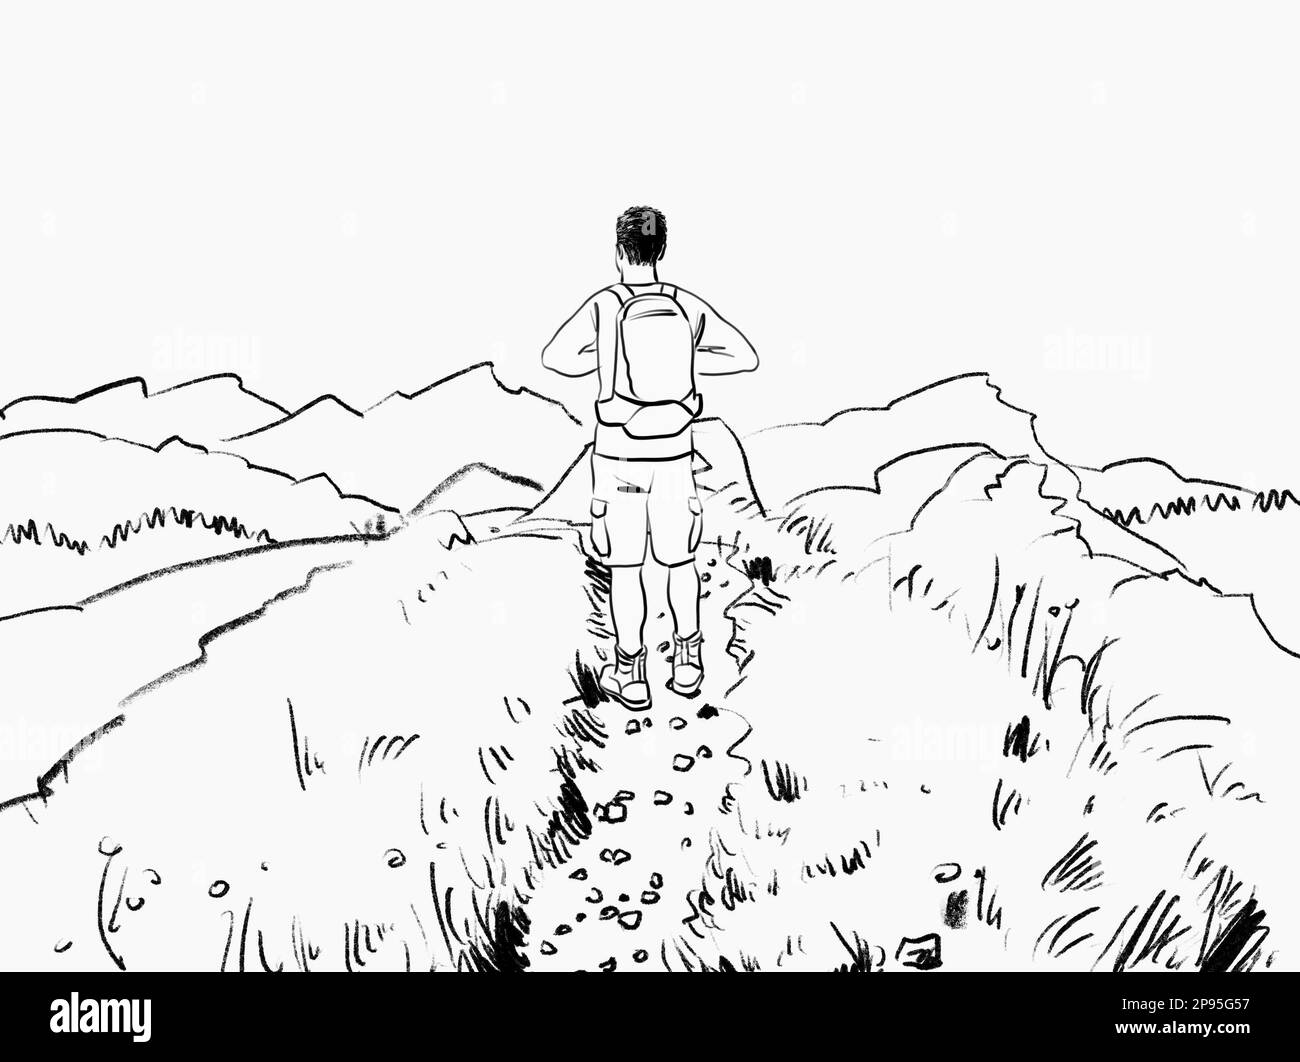 Un randonneur bénéficie de la vue sur un paysage alpin. dessin / illustration de lignes noir et blanc Banque D'Images